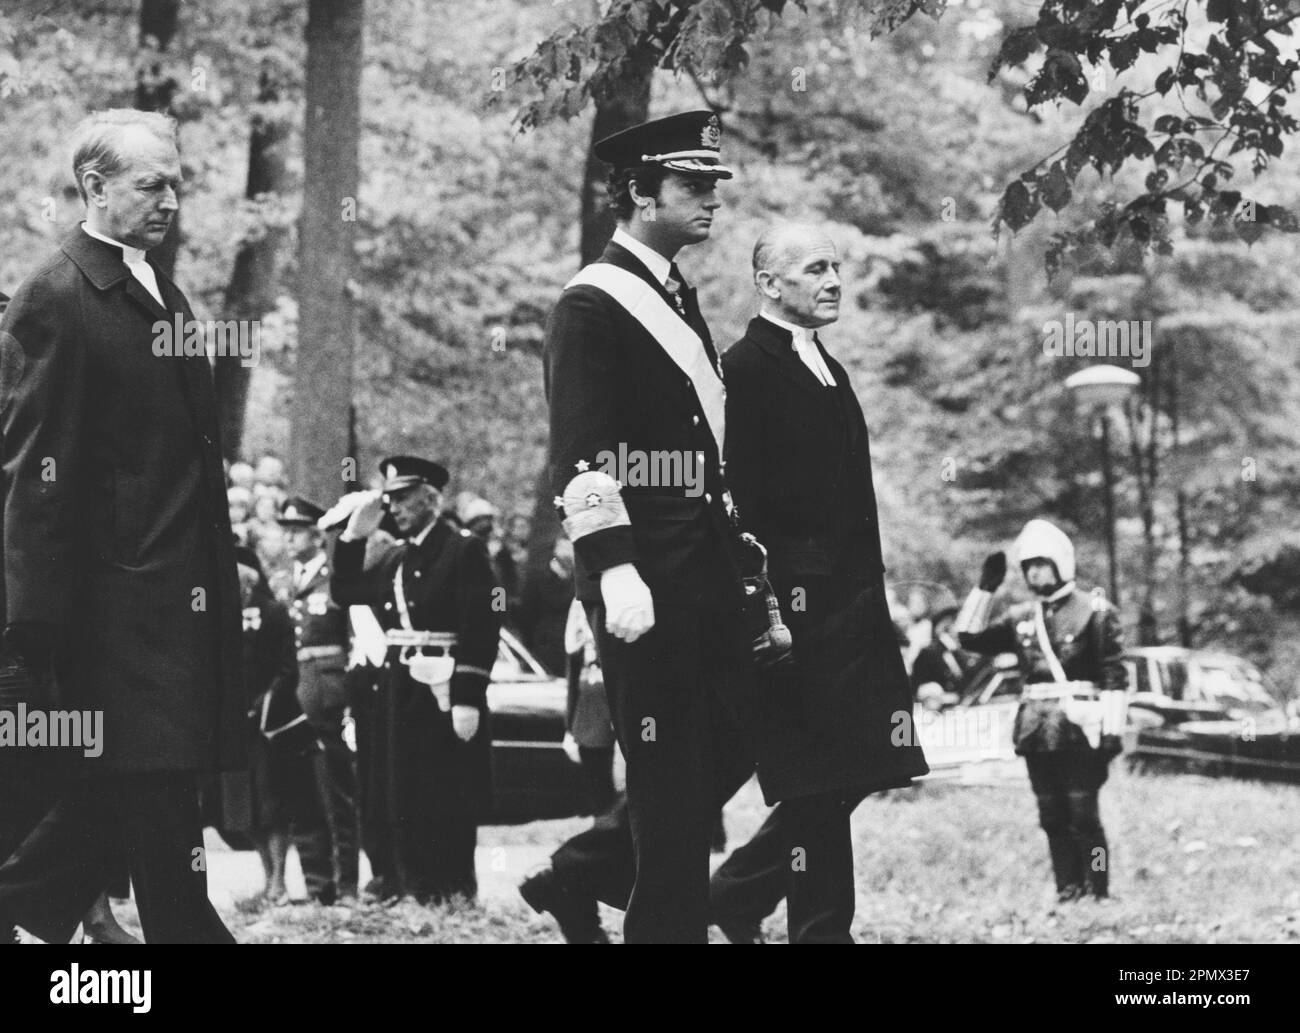 Carl XVI Gustaf, roi de Suède. Né le 30 avril 1946. Photo le 25 septembre 1973 aux funérailles de son grand-père, le roi Gustaf VI Adolf. Photo prise au parc royal Haga avec le roi marchant entre l'archevêque Olof Sundby et le prêtre Hans Åkerhielm. Banque D'Images